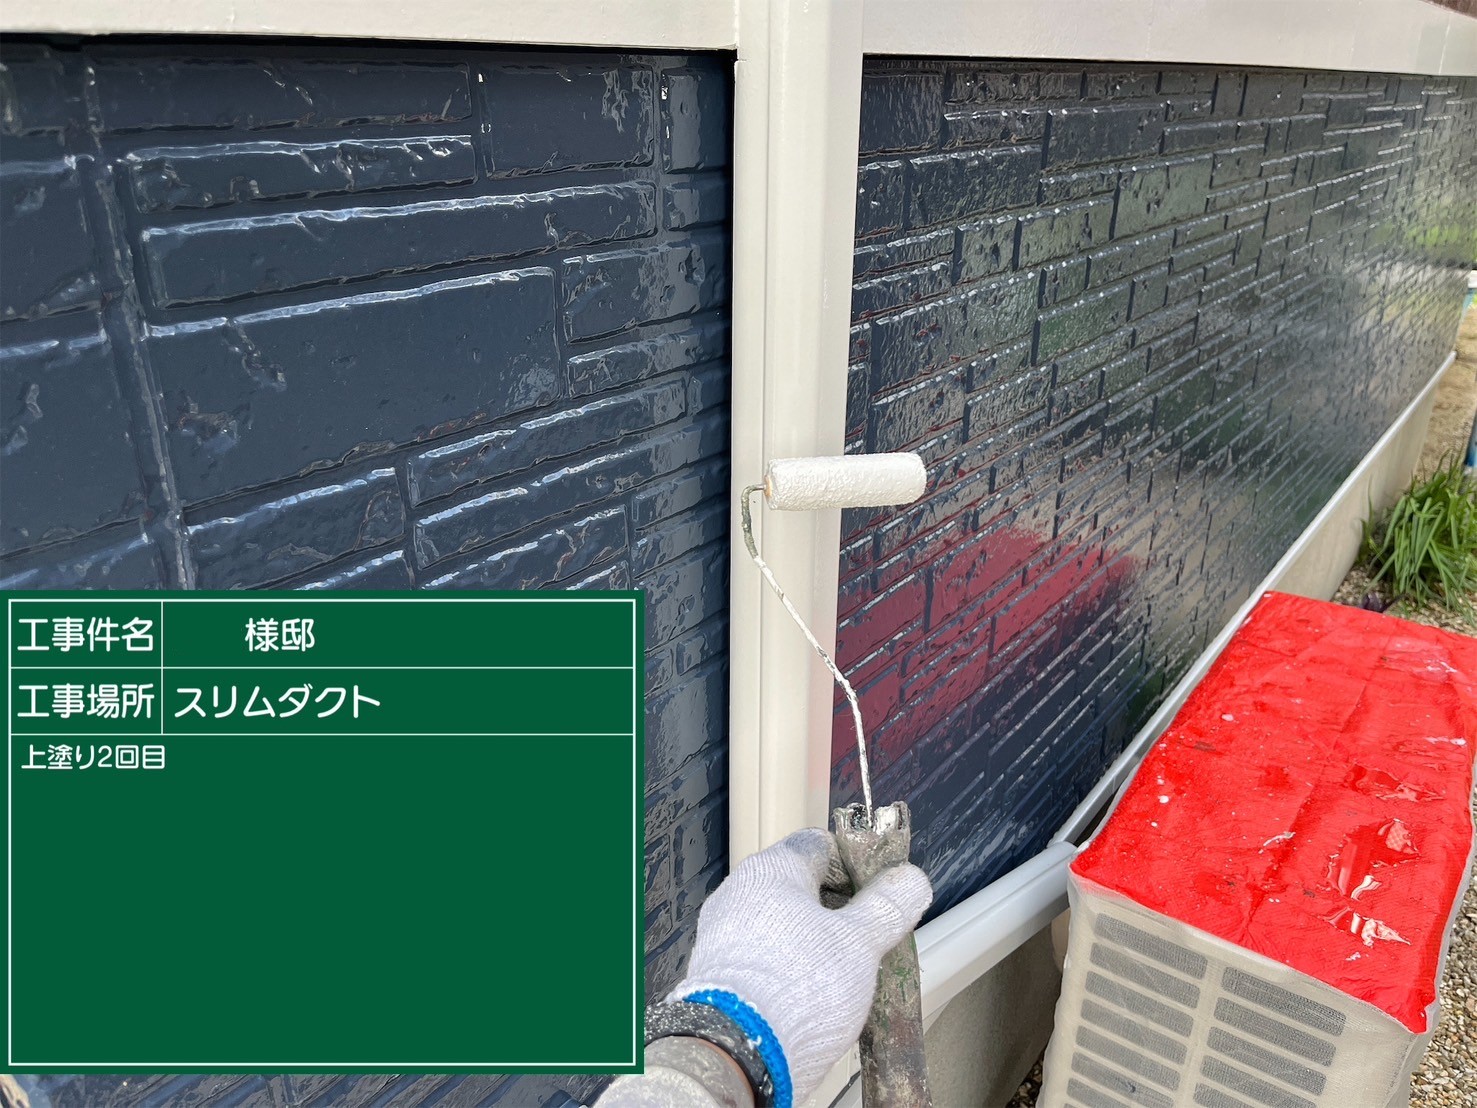 福岡県筑紫野市岡田のK様邸で色褪せを起こしたサイディングボードの塗り替えと剥がれを起こしている付帯部の補修を行い、屋根の汚れも一度きれいに除去してから全体の塗装を行っていきます。3/9着工です。【チラシより】